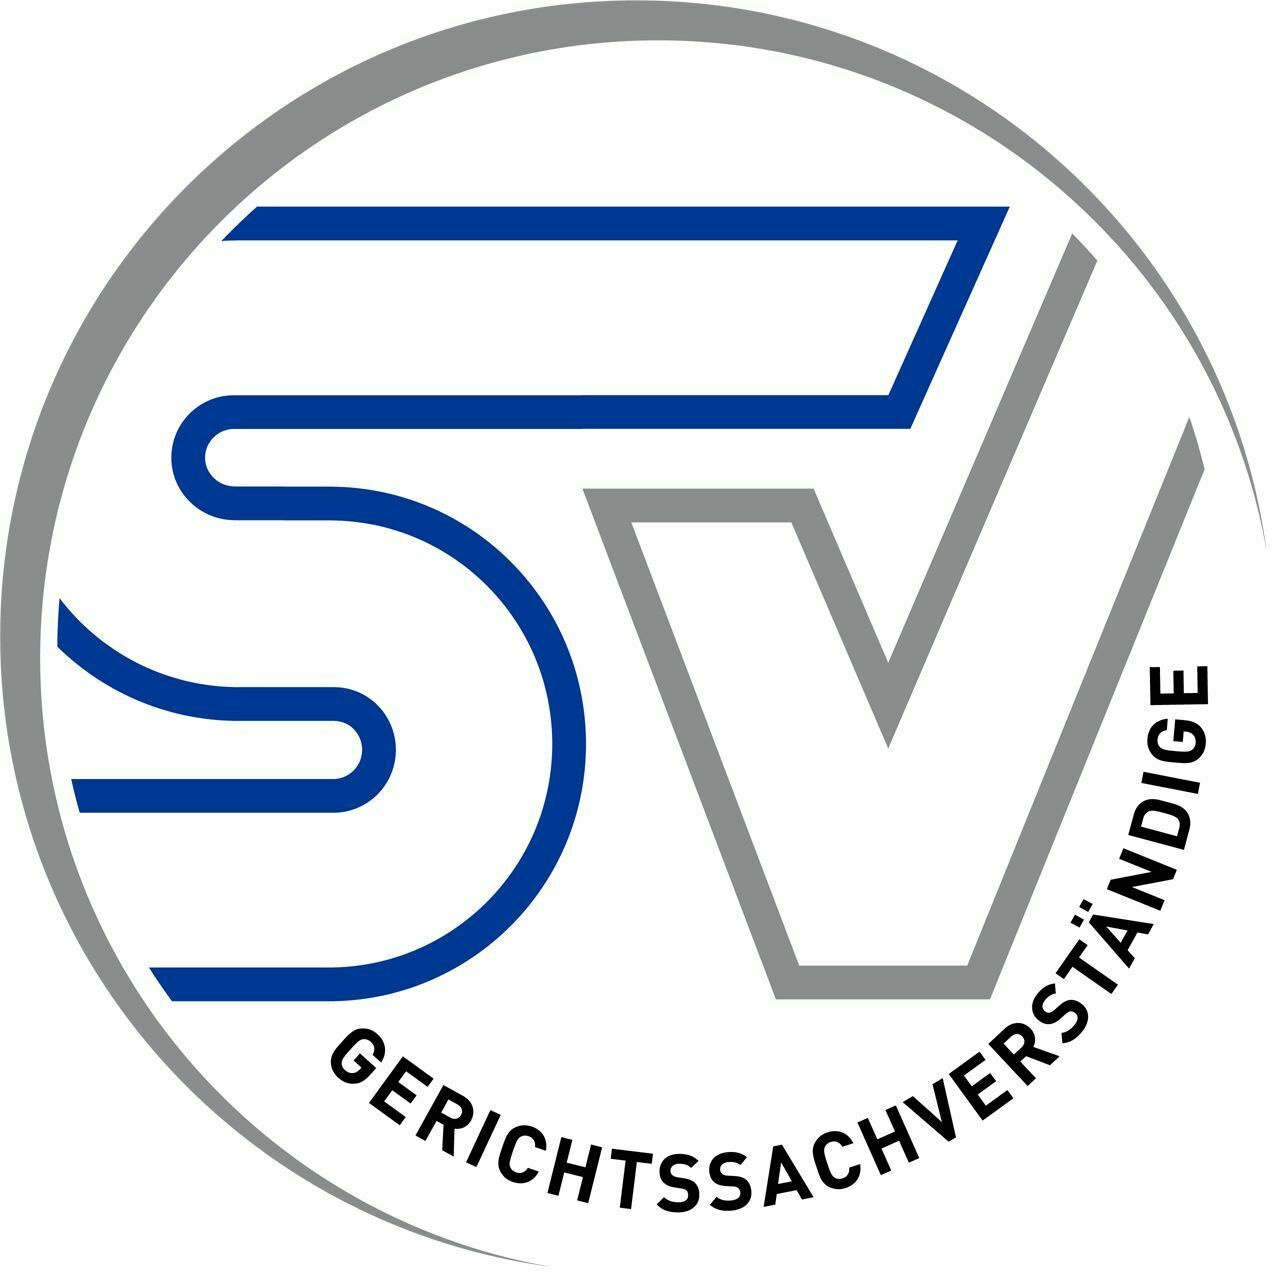 Sachverständigen Verband Logo